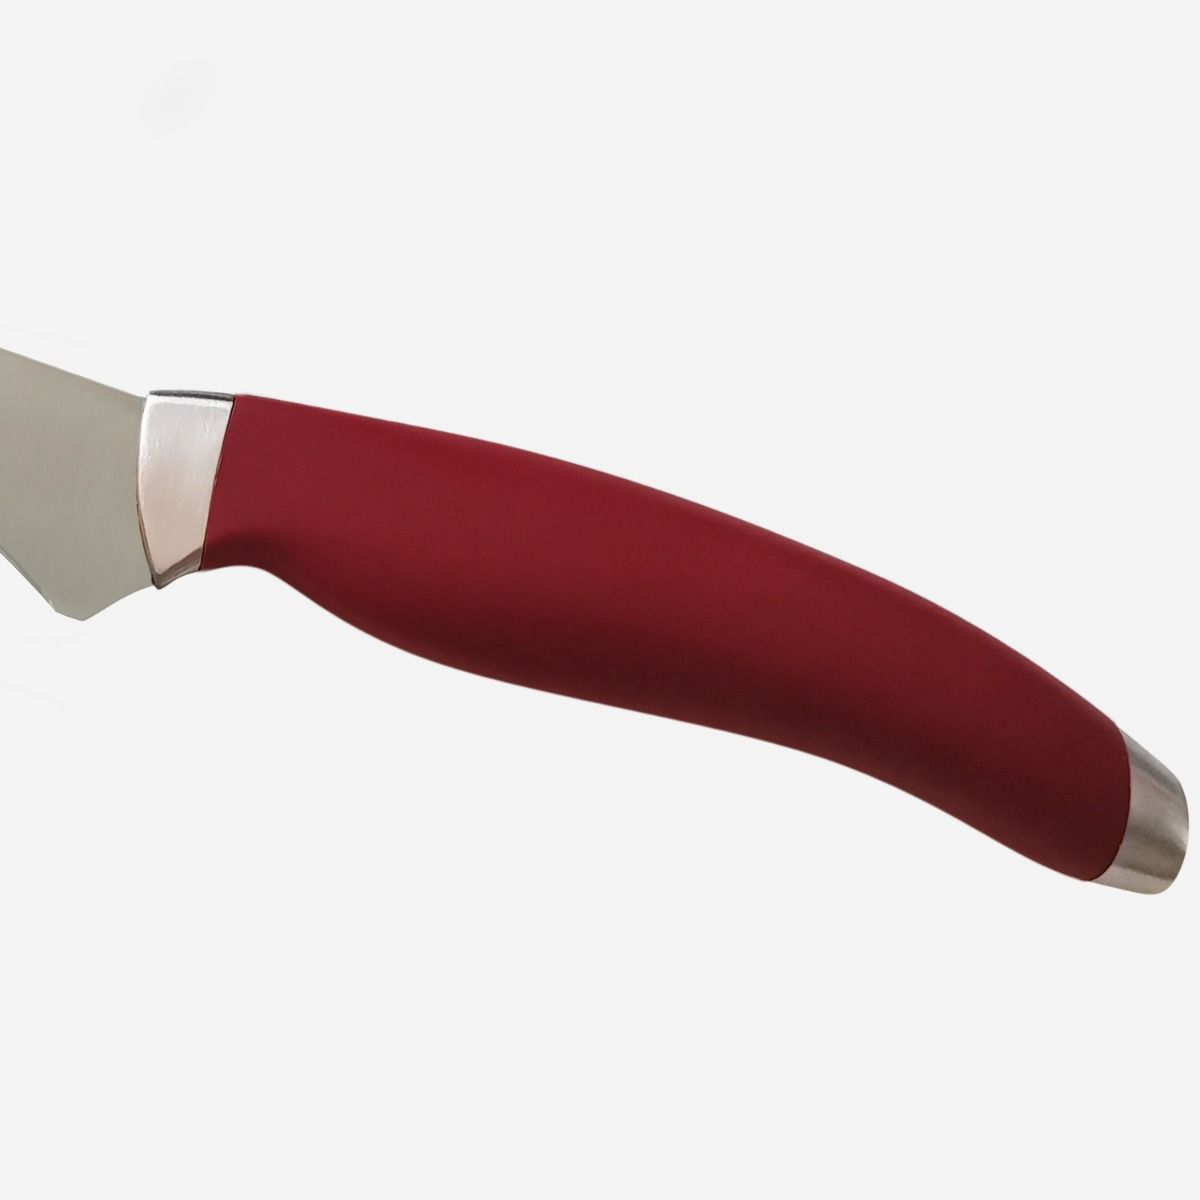 Set Ham of 3 Knives  Stainless Steel Berkel Teknica Handle Red Resin